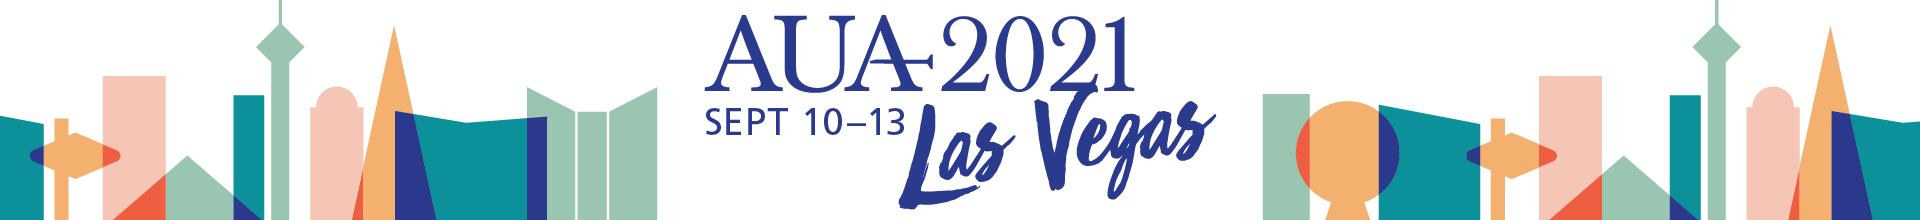 AUA 2021 Annual Meeting Event Banner